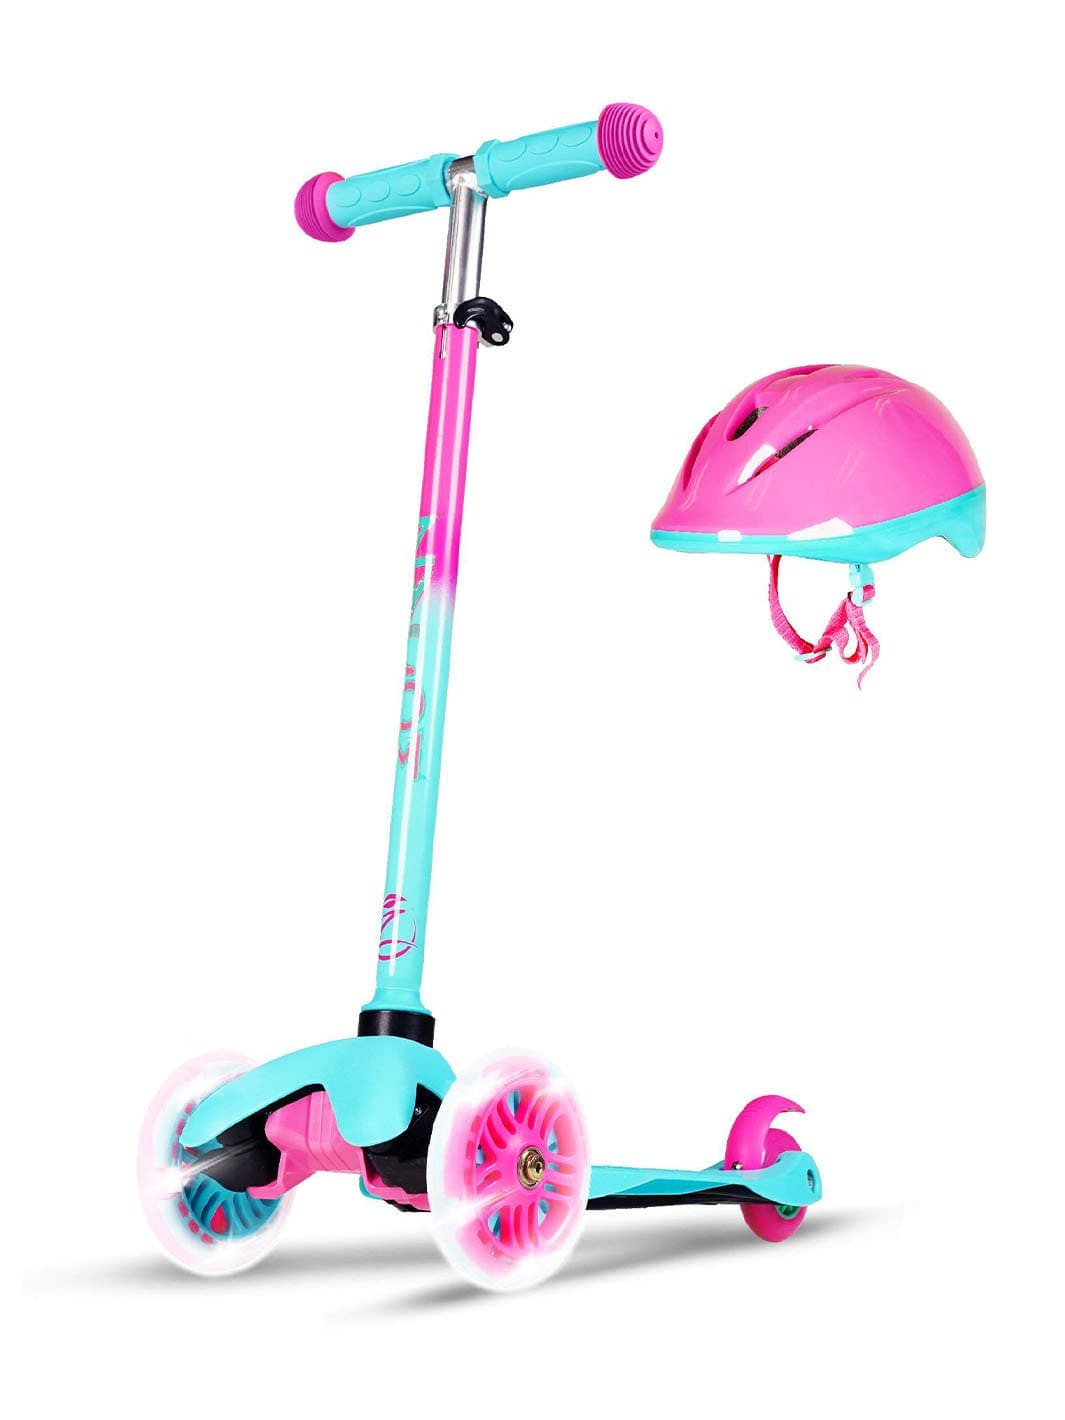 Zycom Zipper Scooter & Helmet - Teal Pink - Madd Gear Global | Est 2002